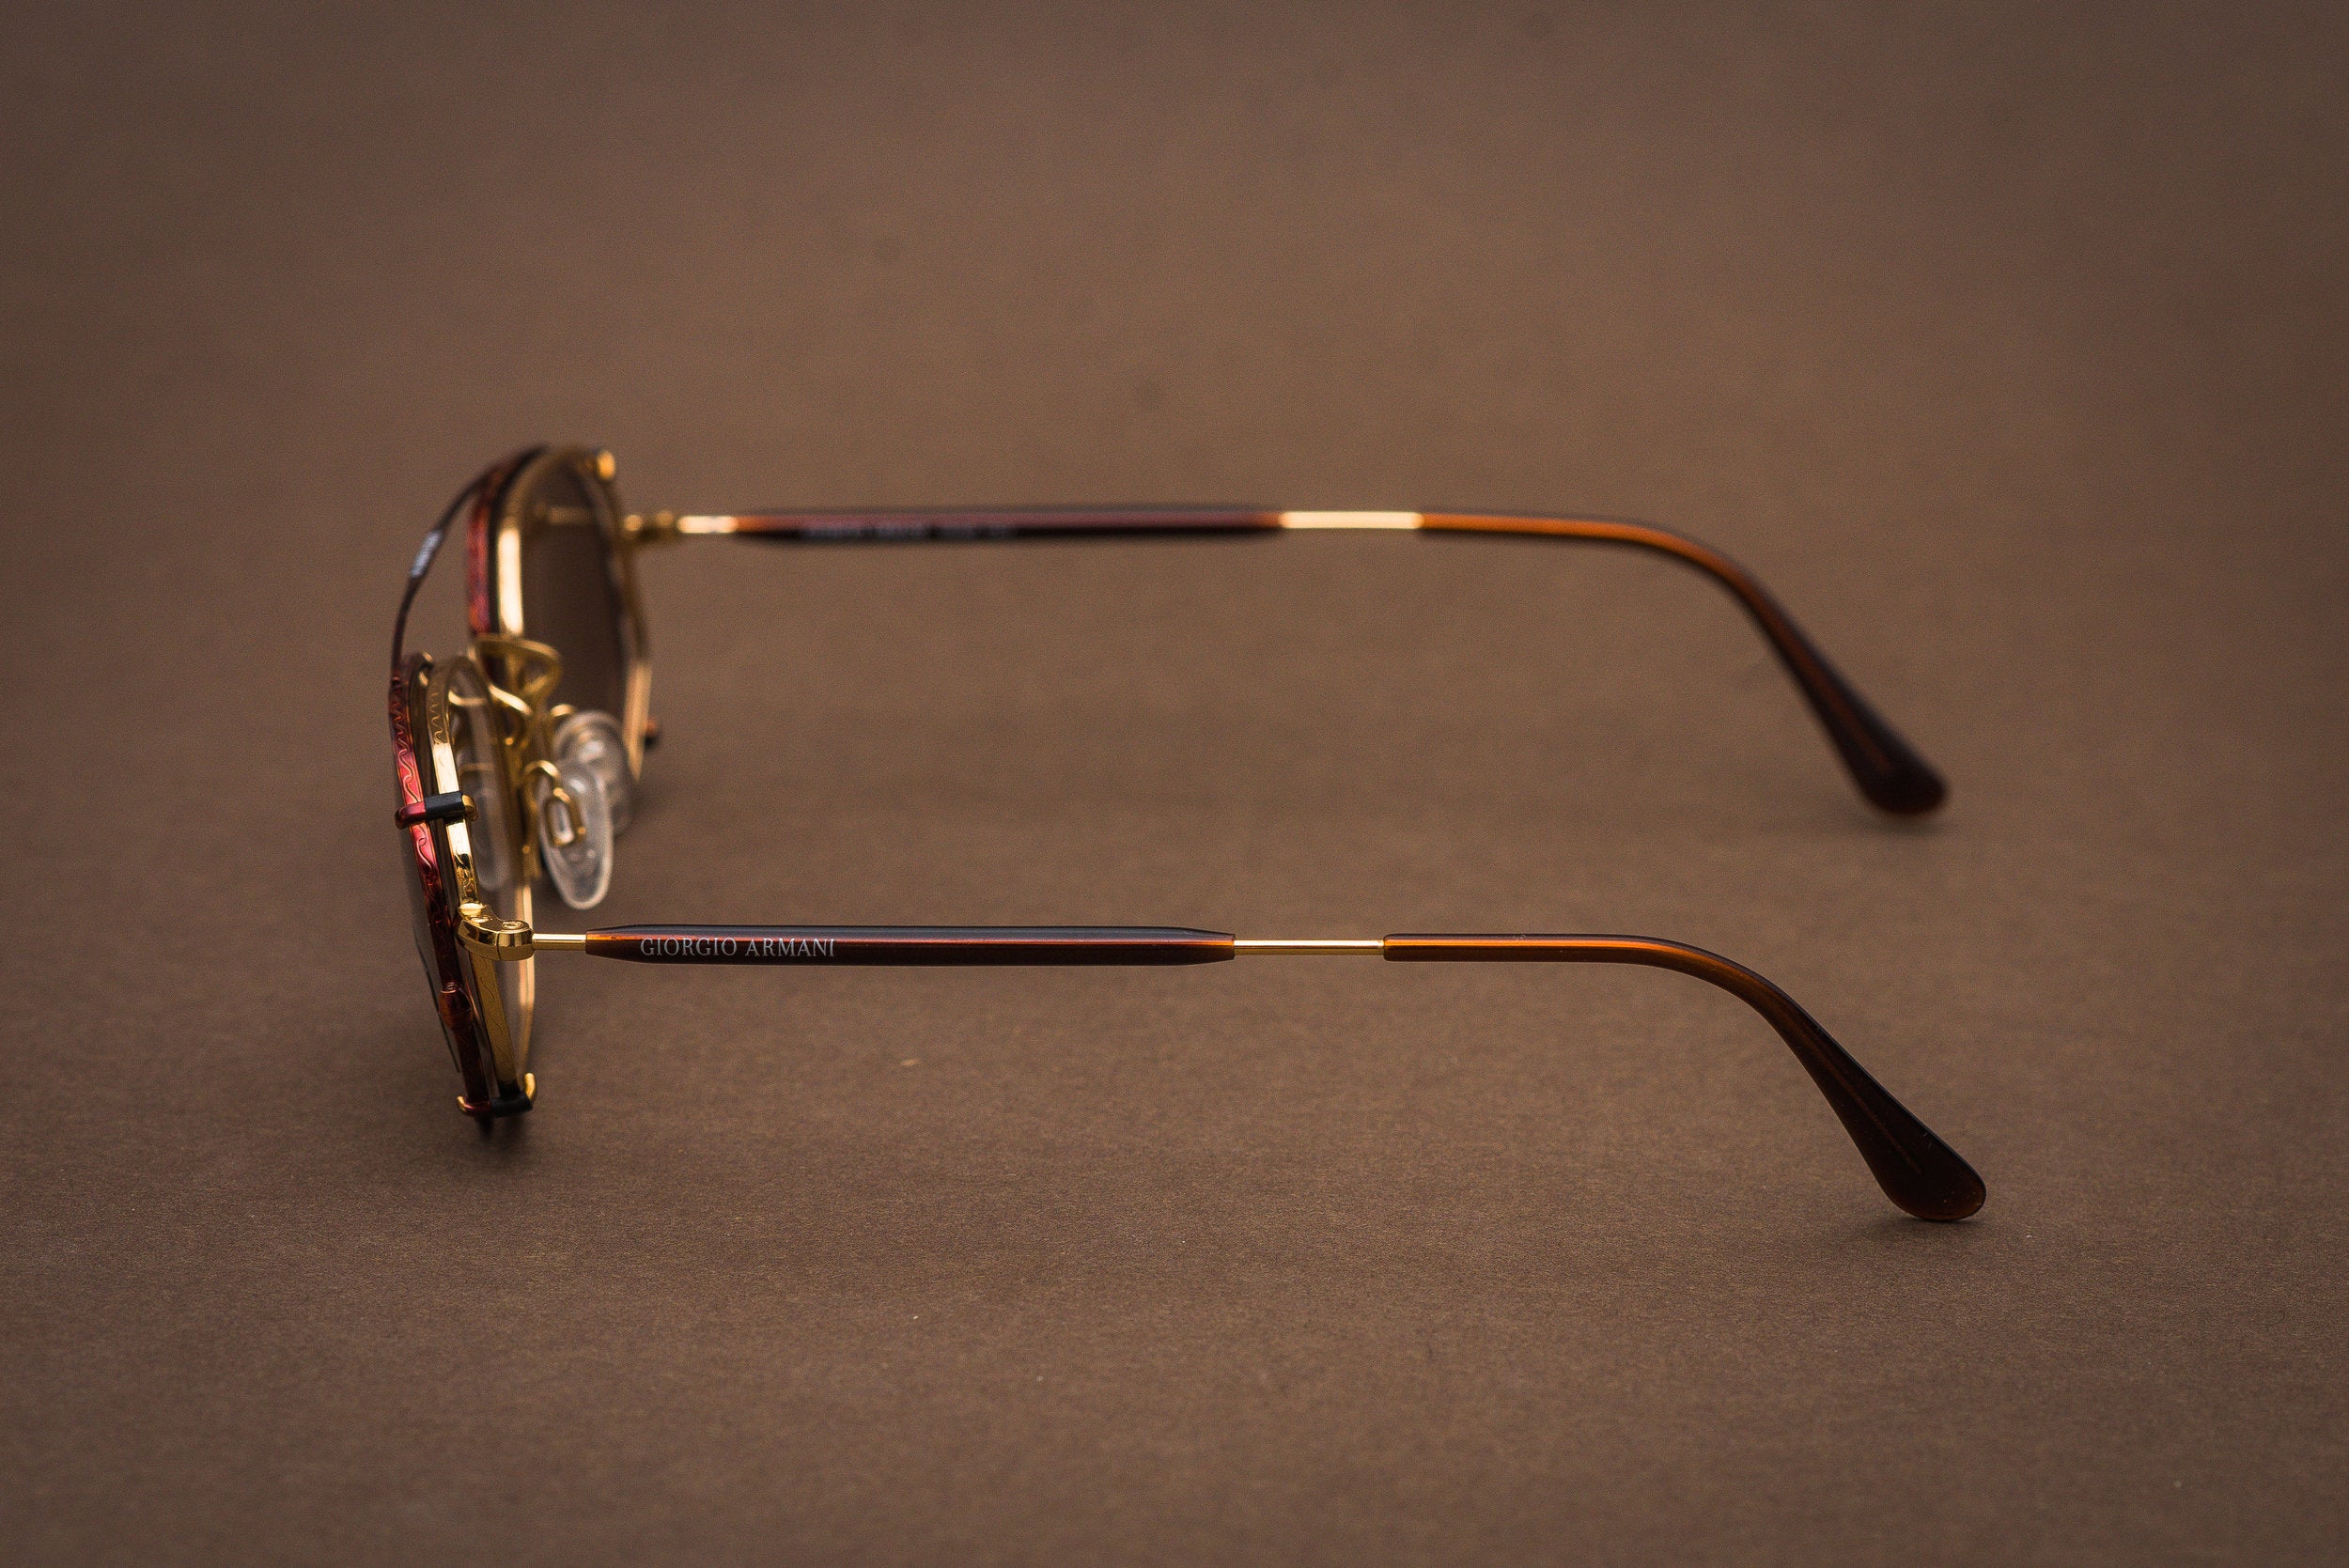 Giorgio Armani 182 clip on glasses